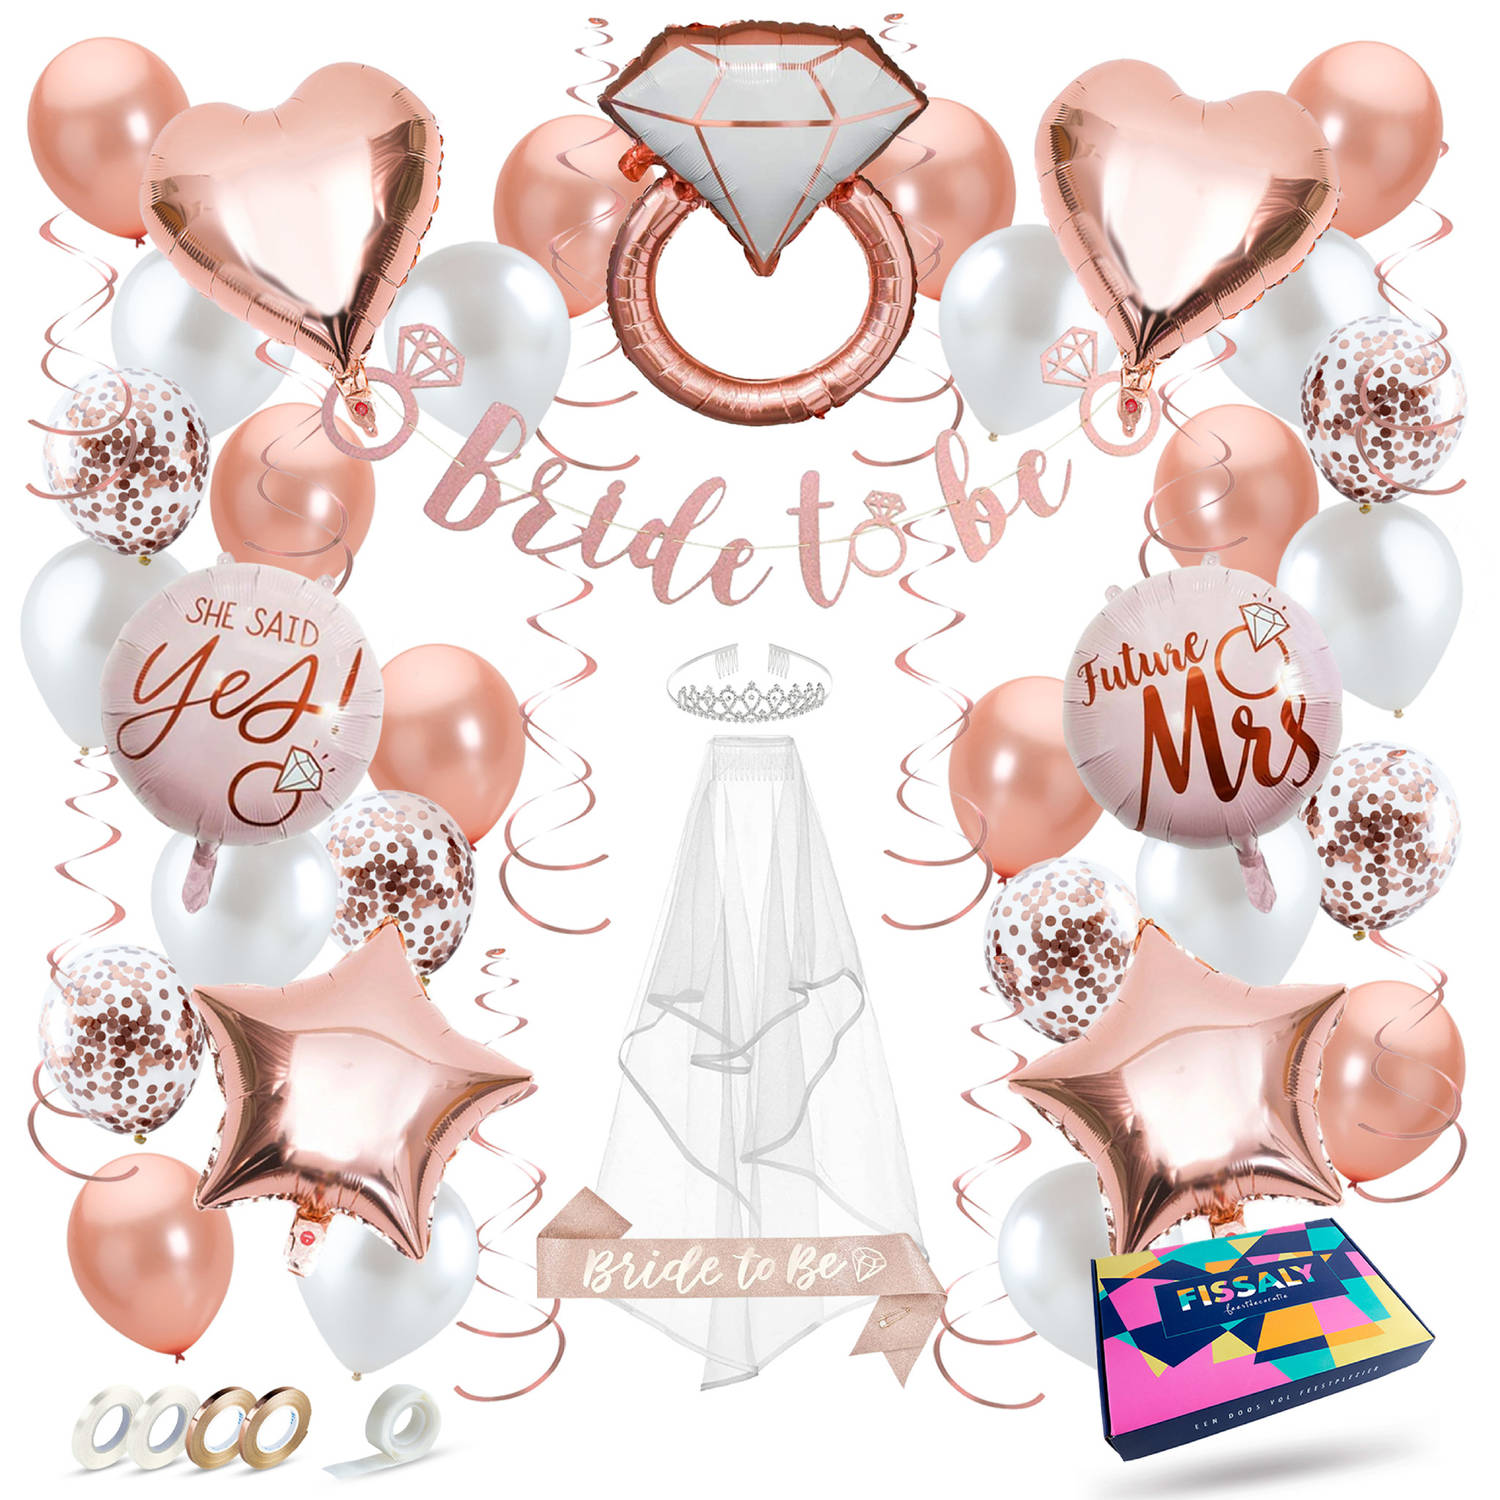 Fissaly® 56 Stuks Bride To Be Decoratie Set Vrijgezellenfeest Vrouw Inclusief Ballonnen, Sjerp, Slui